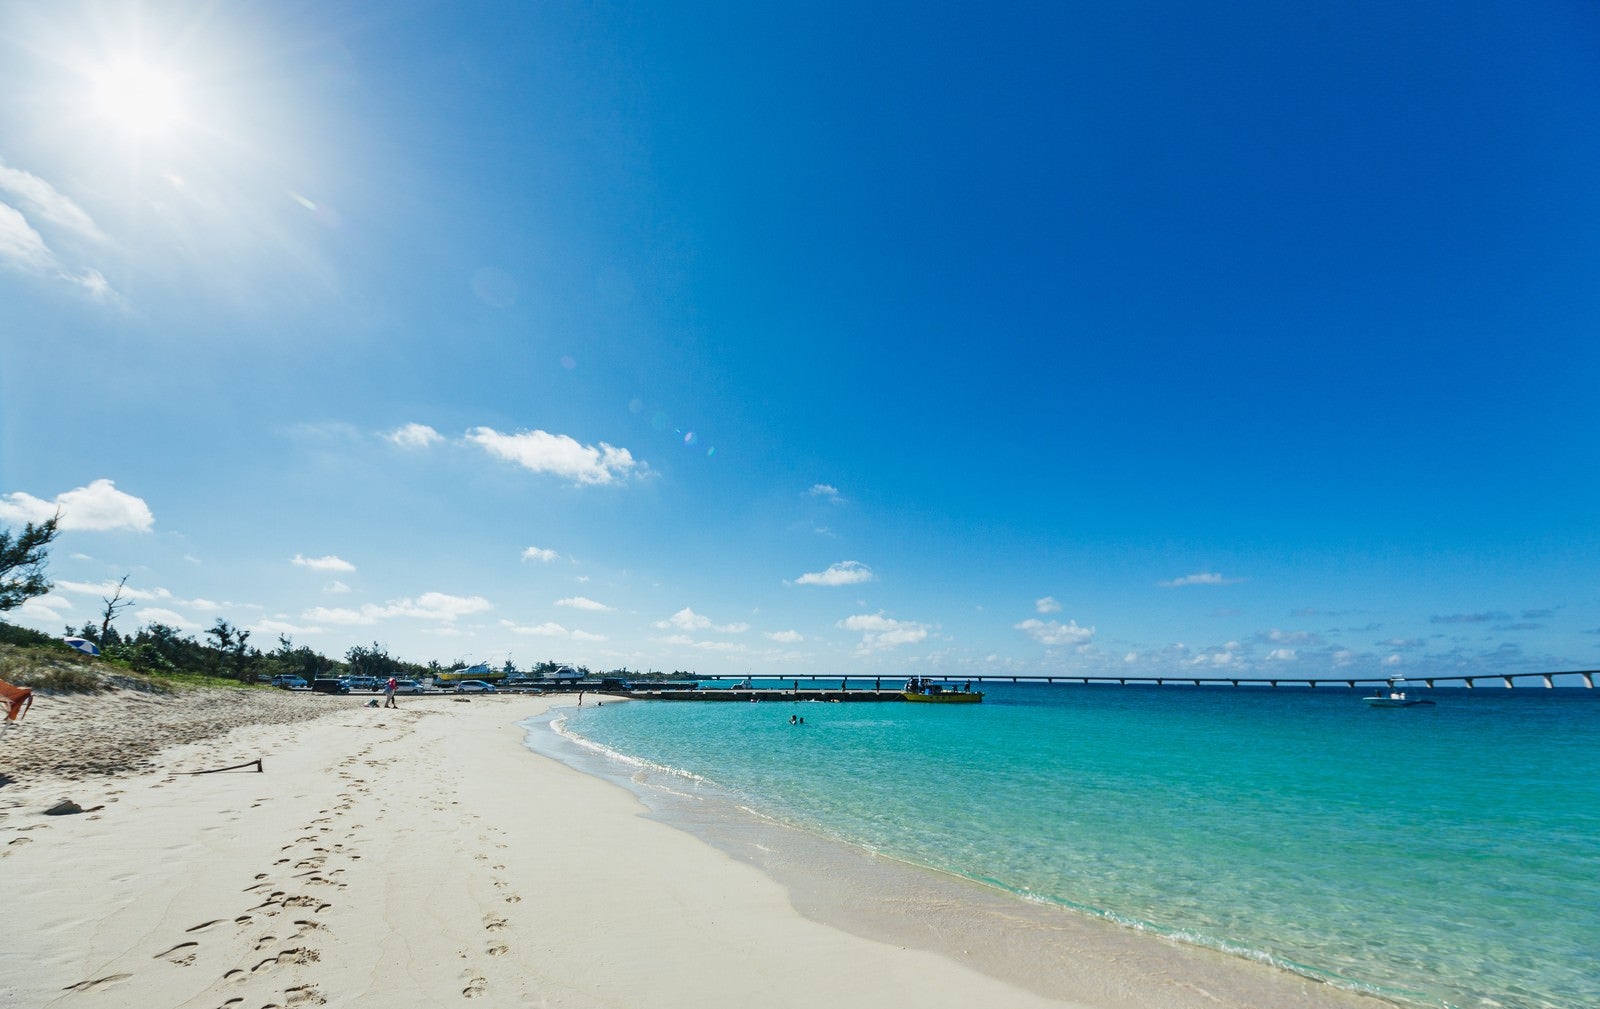 「透き通る青い空と浜辺に残る足跡」の写真